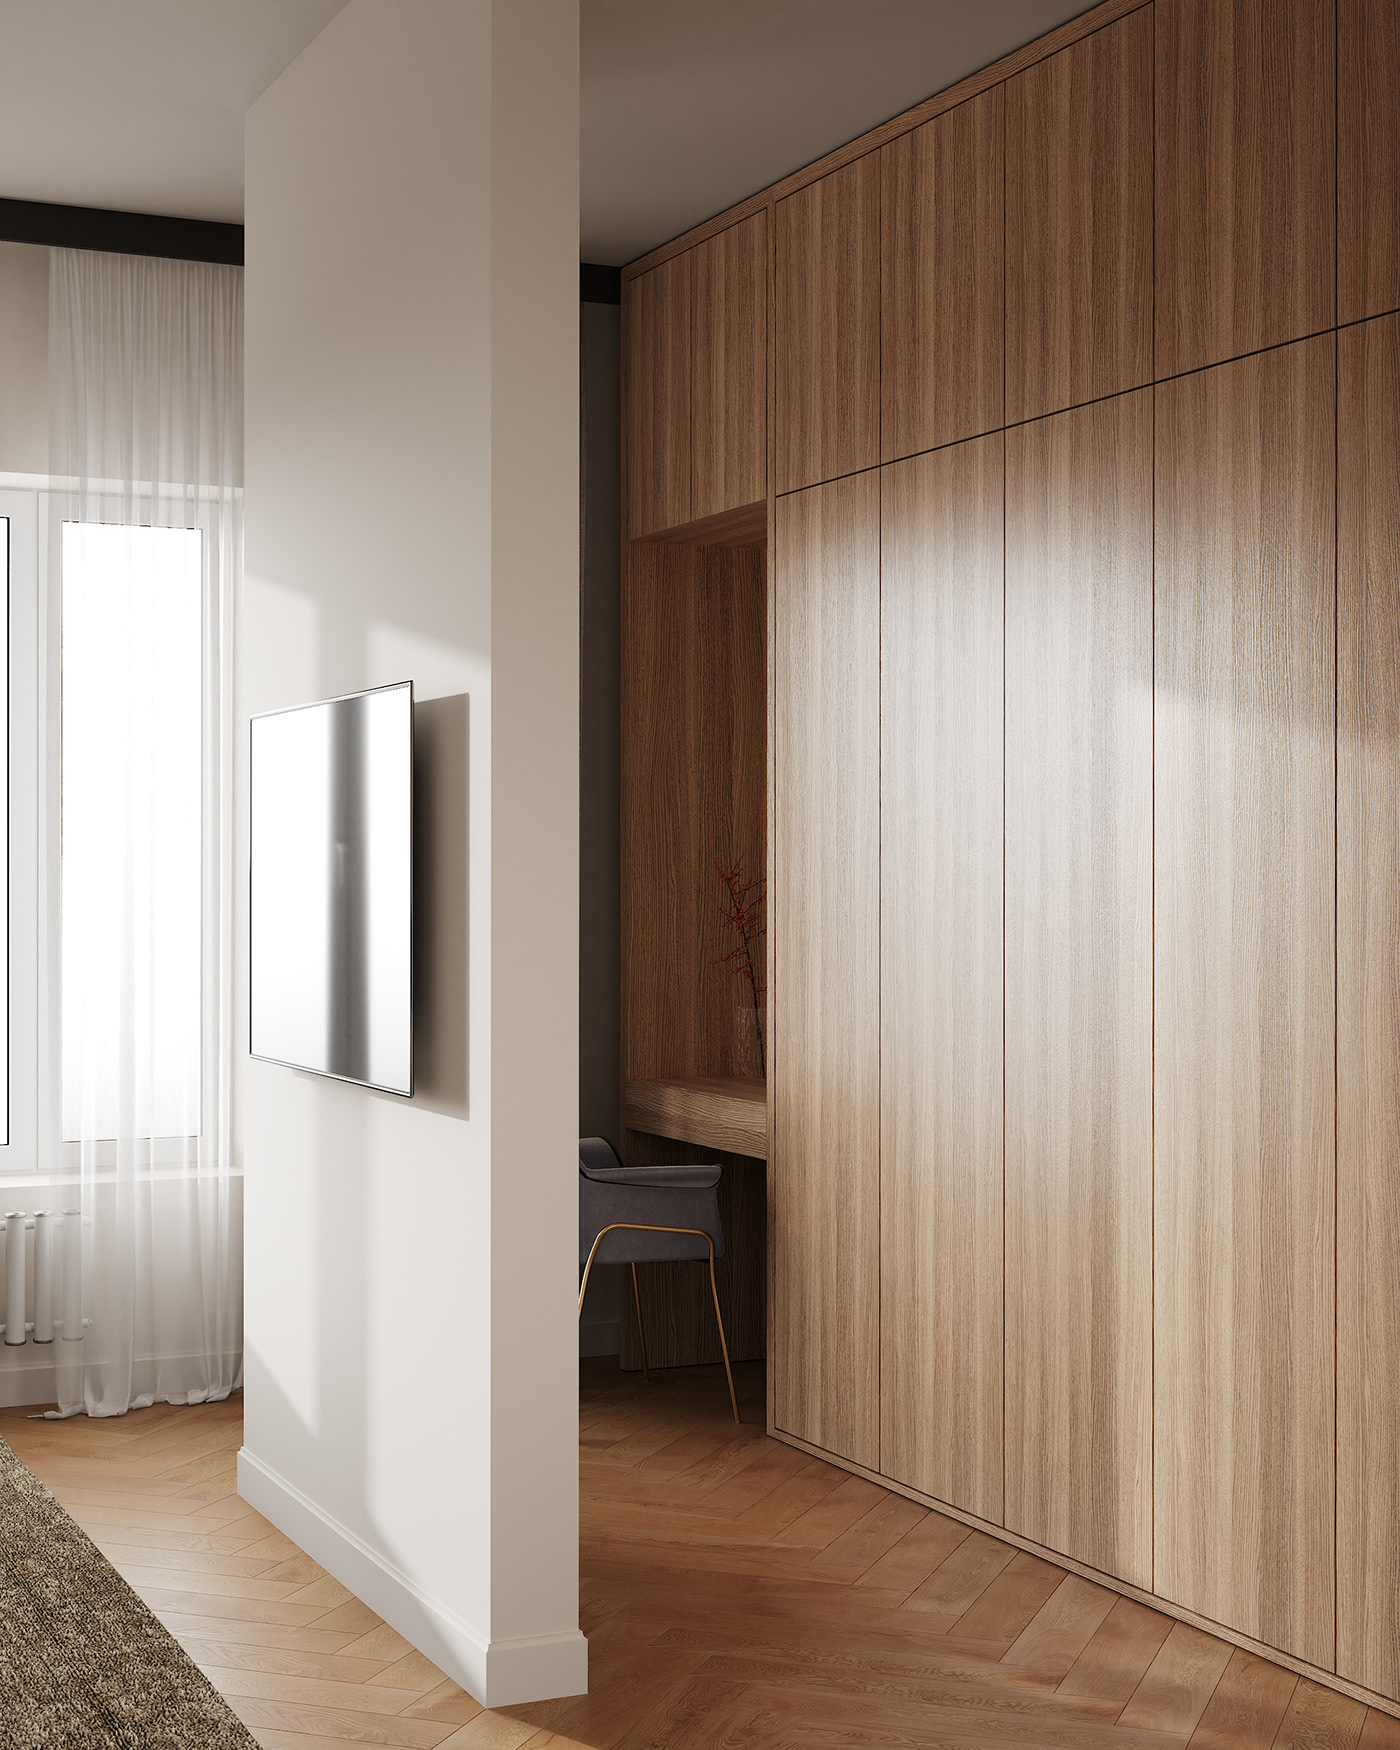 3ds max architecture bedroom corona interior design  modern